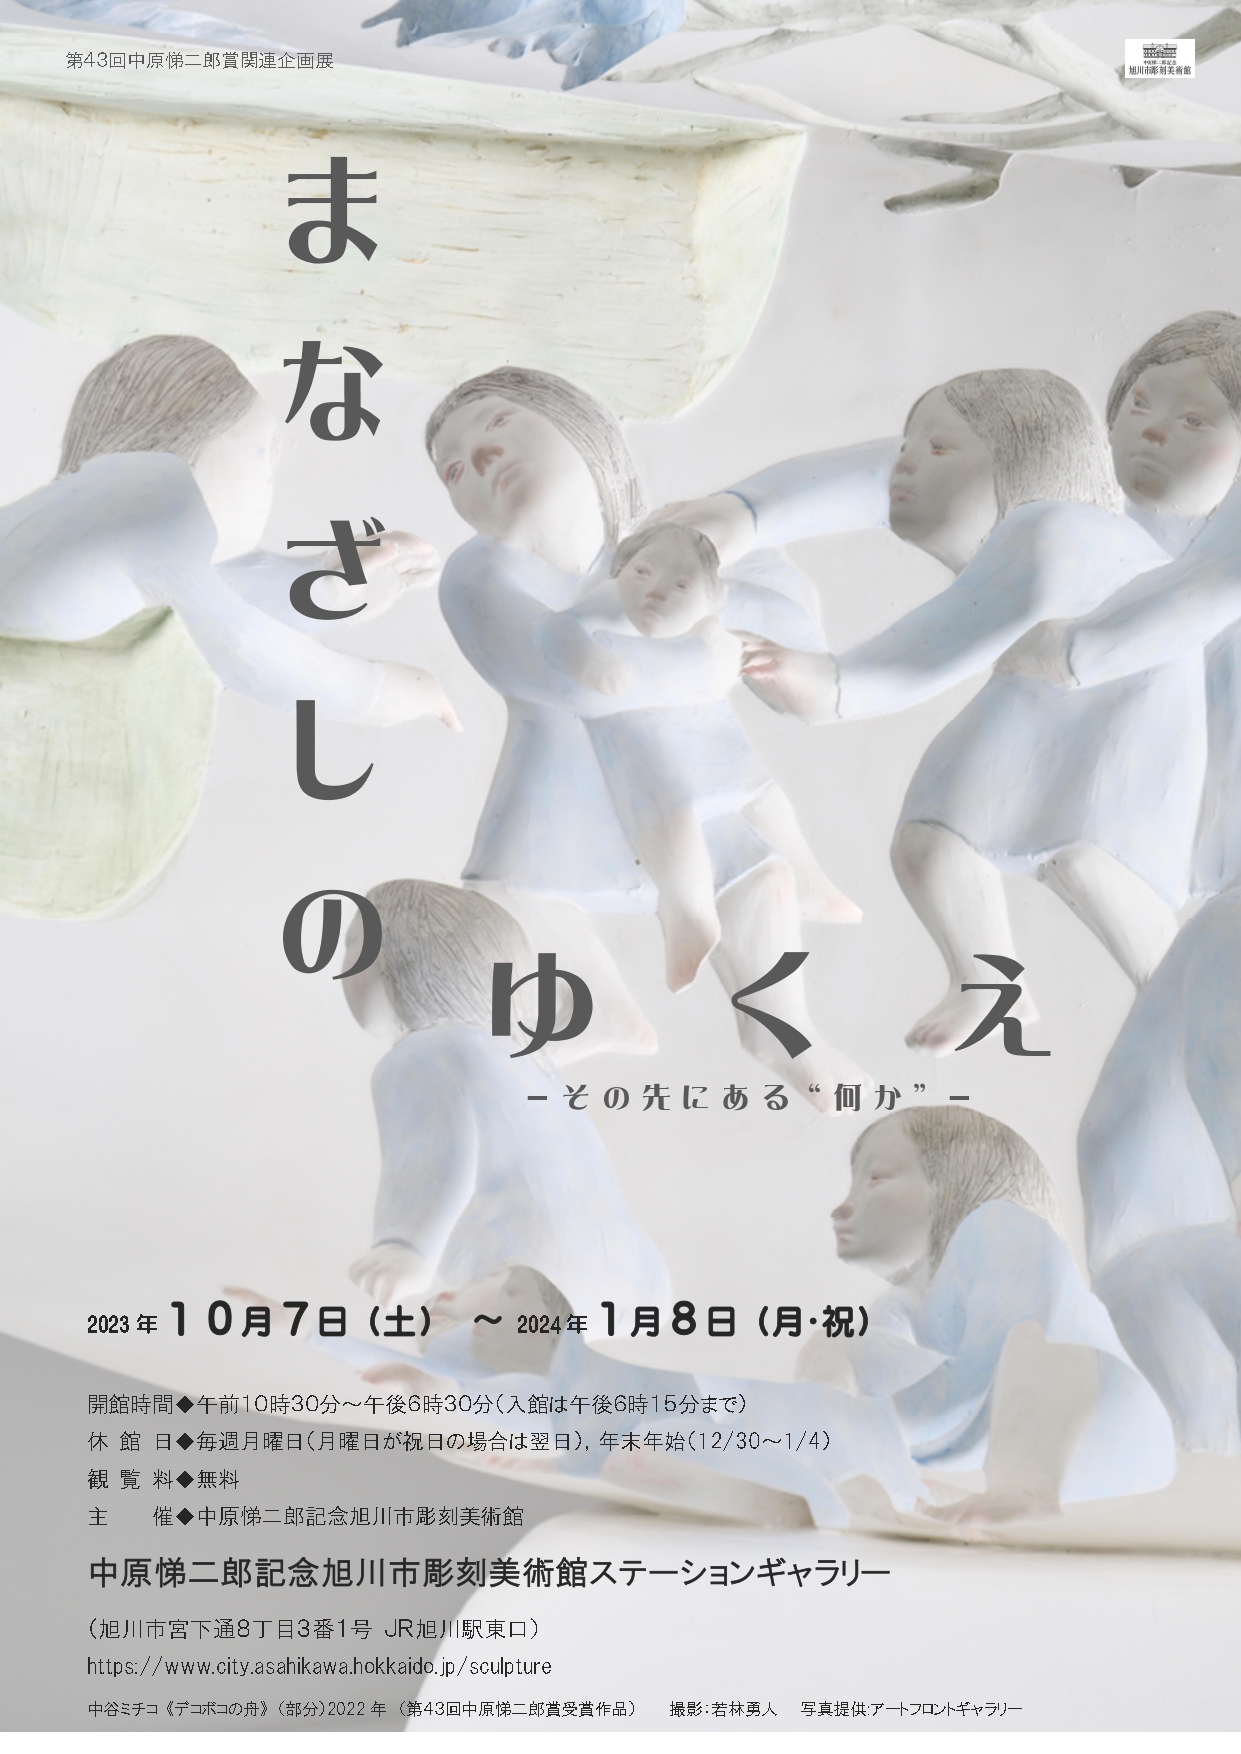 注目商品ARS書店13冊『彫刻の美』『20世紀 日本彫刻物語』『中原悌二郎』『彫刻の思想』『彫刻の生命』『近代彫刻の歩み展』 解説、評論